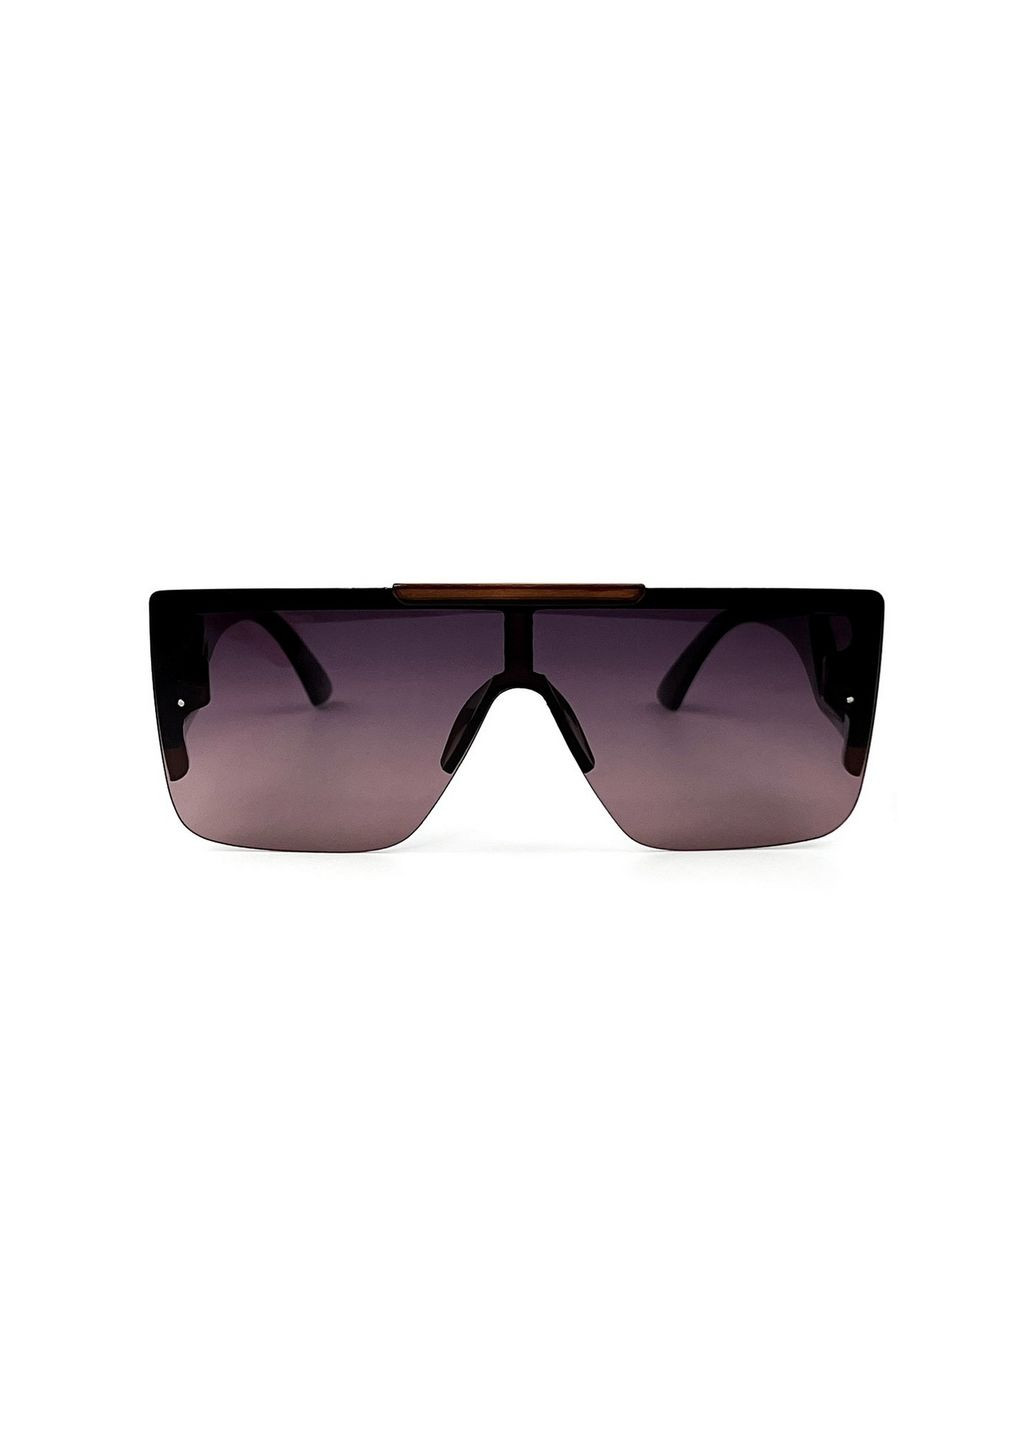 Солнцезащитные очки с поляризацией Маска мужские 195-745 LuckyLOOK 195-745m (280915223)